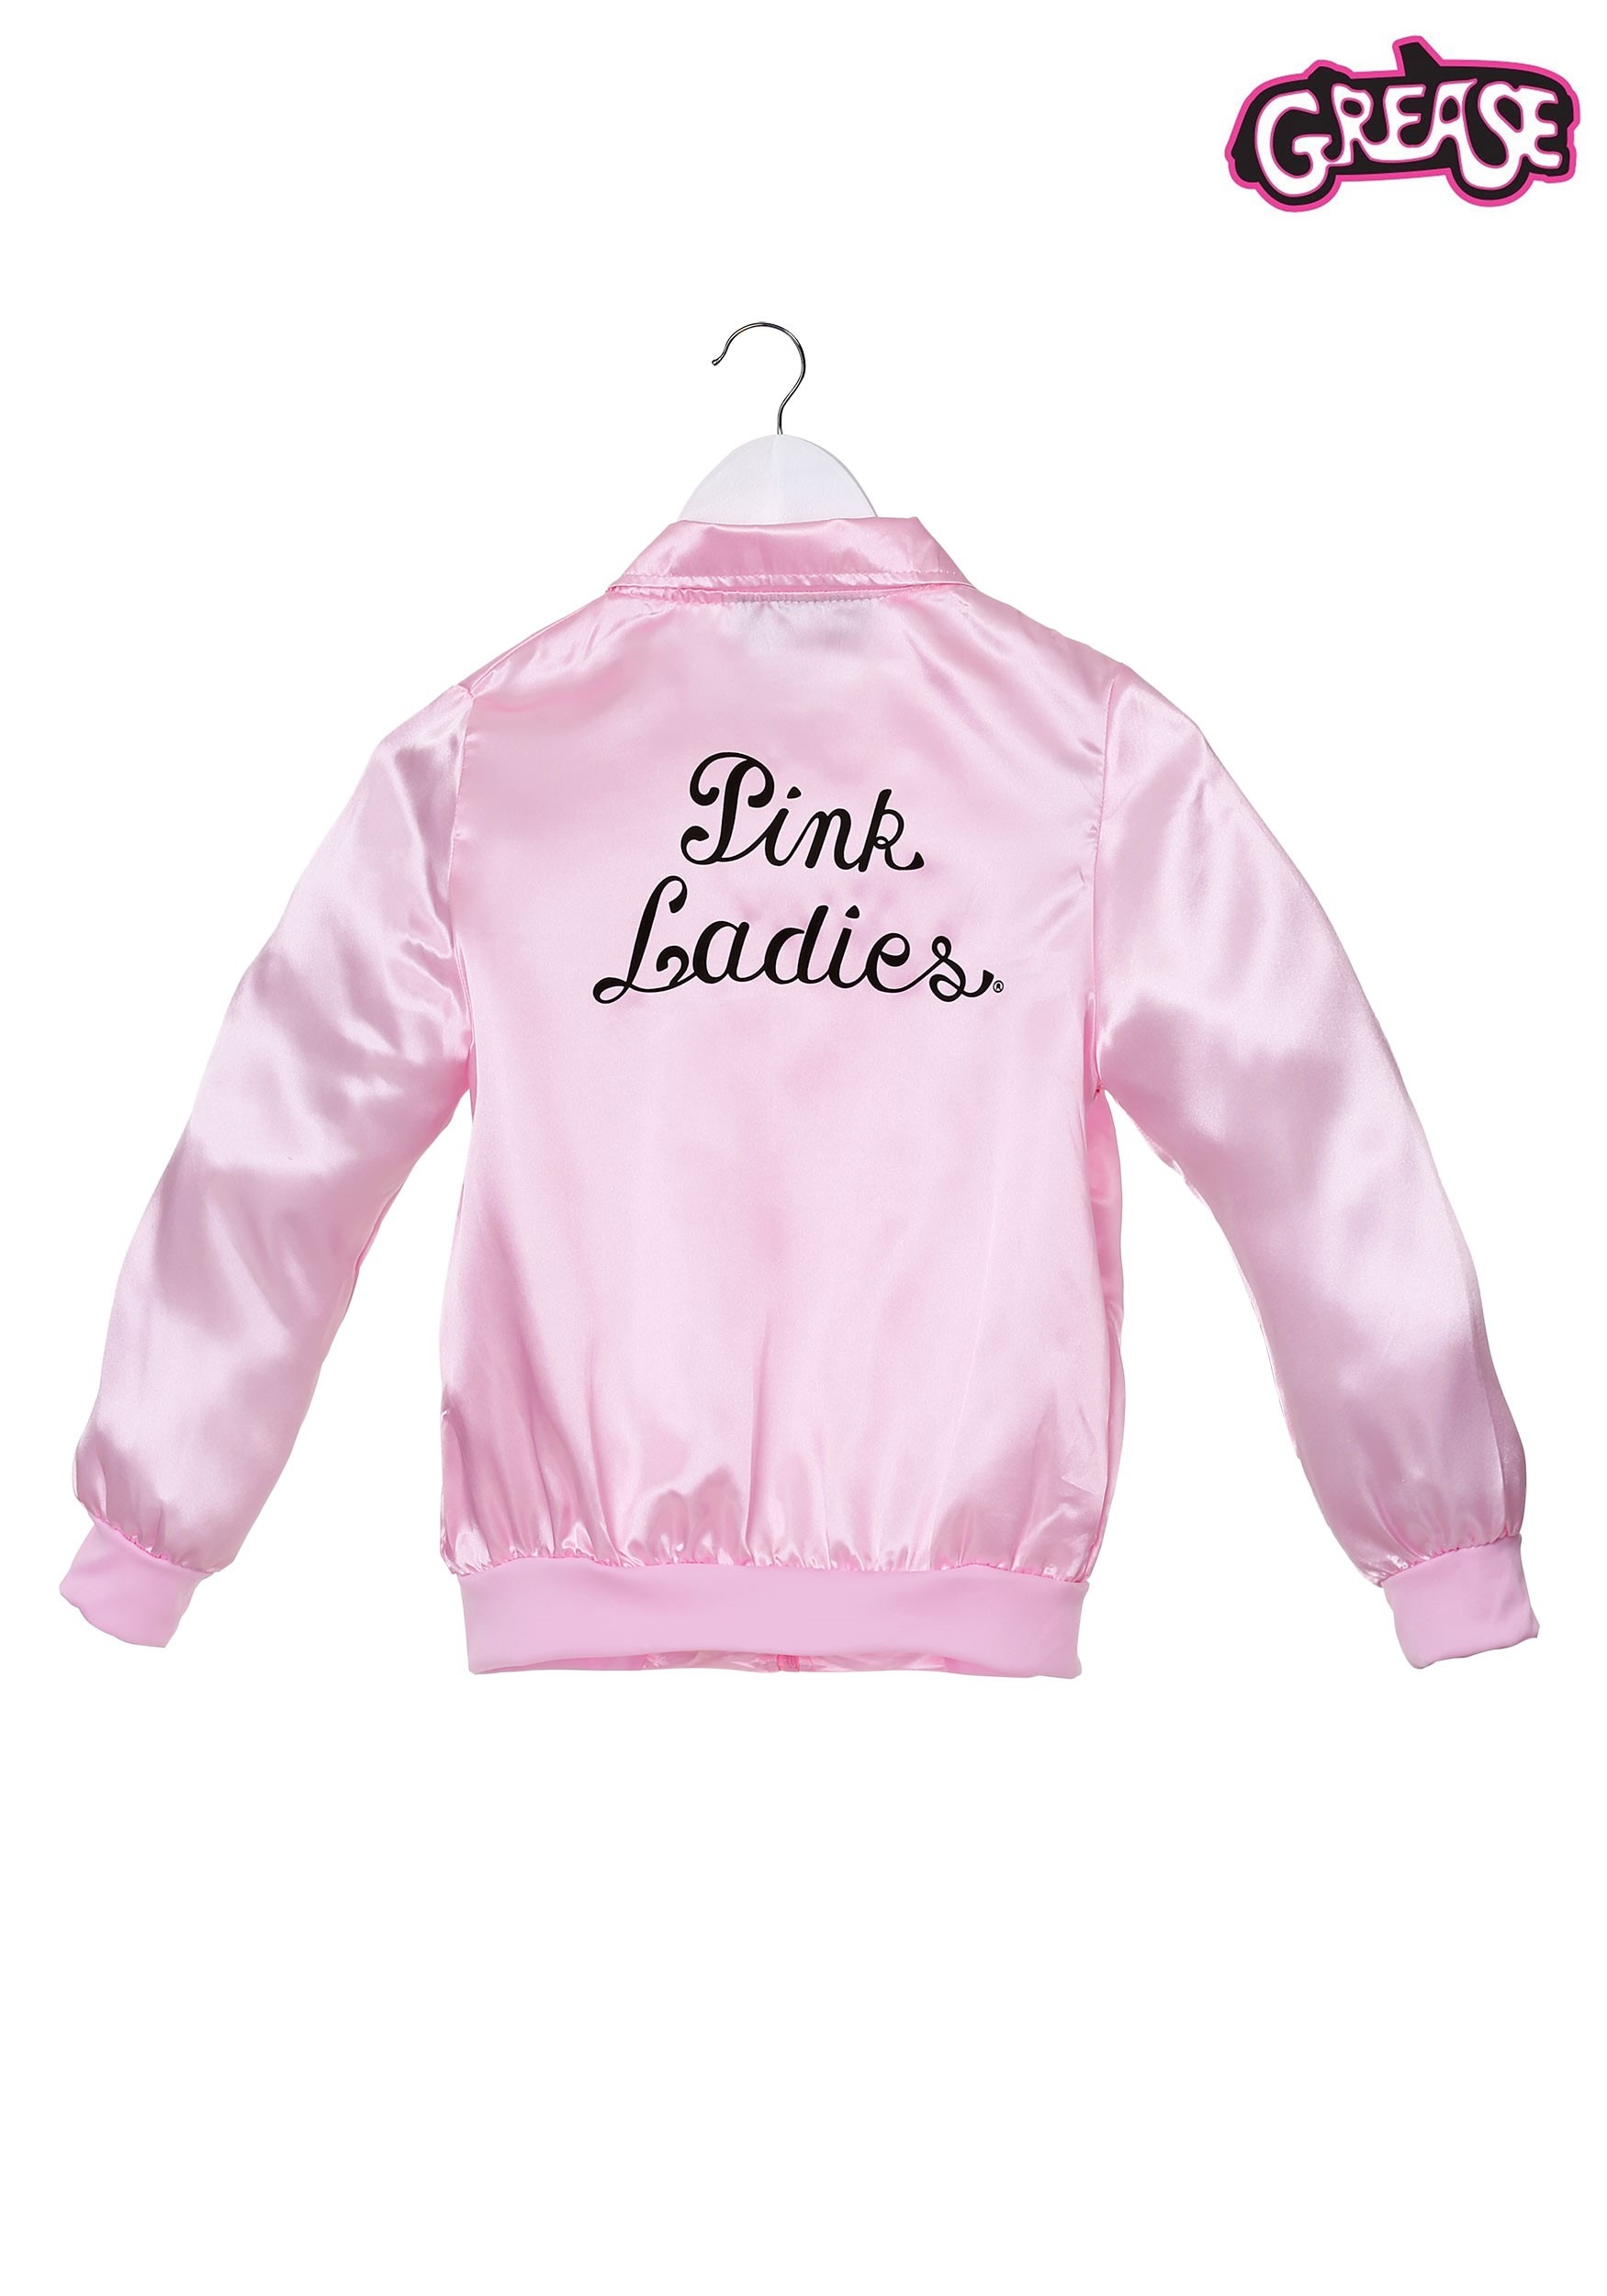 Chaqueta de Pink Ladies para niña - Disfraz Grease. Have Fun